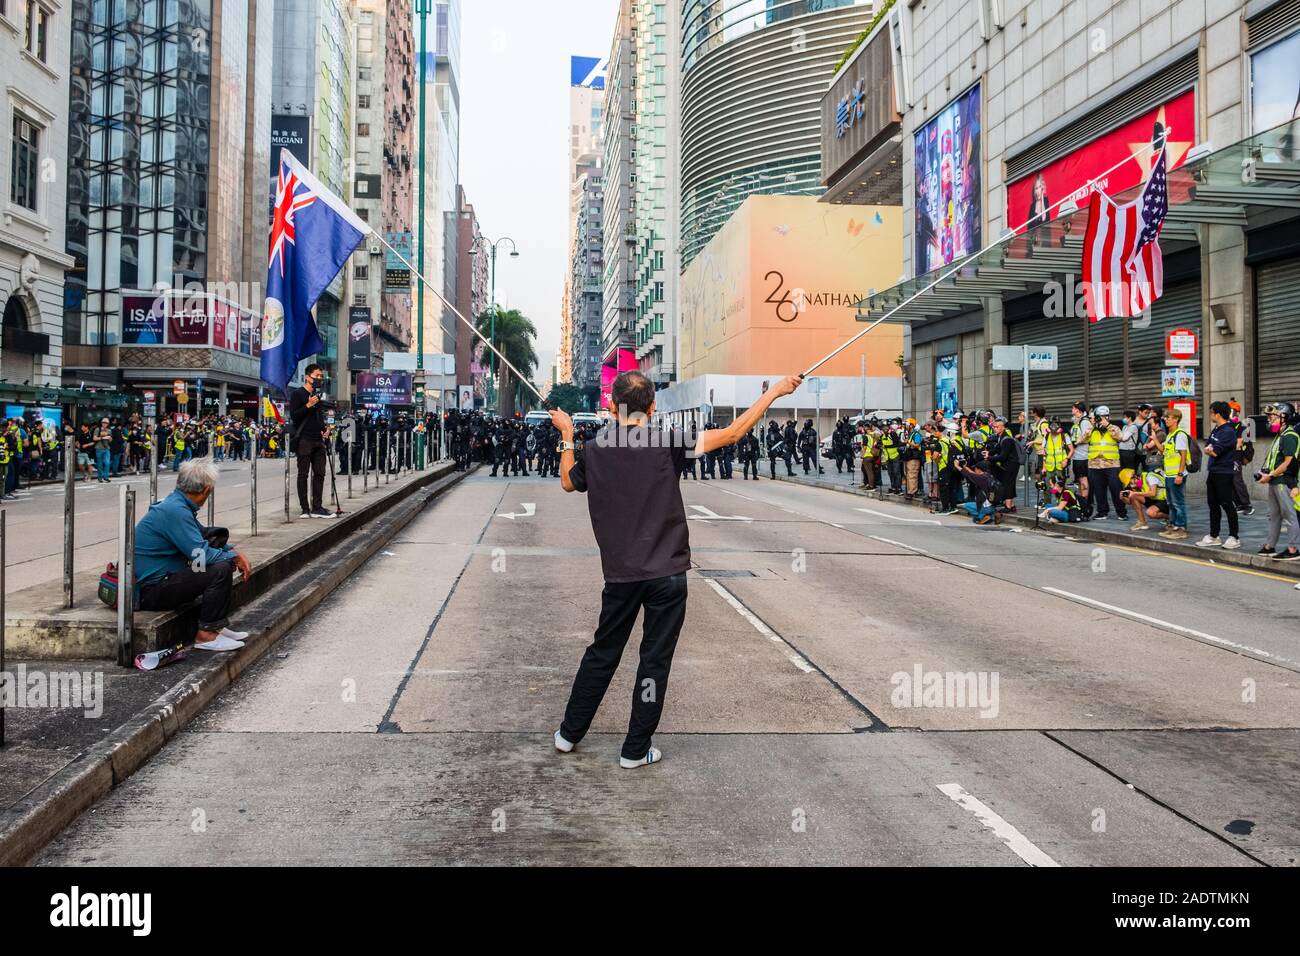 HongKong - Dezember 01, 2019: Menschenmenge auf Demonstration während der 2019 Proteste in Hongkong, einer Reihe von Demonstrationen in Hongkong Stockfoto